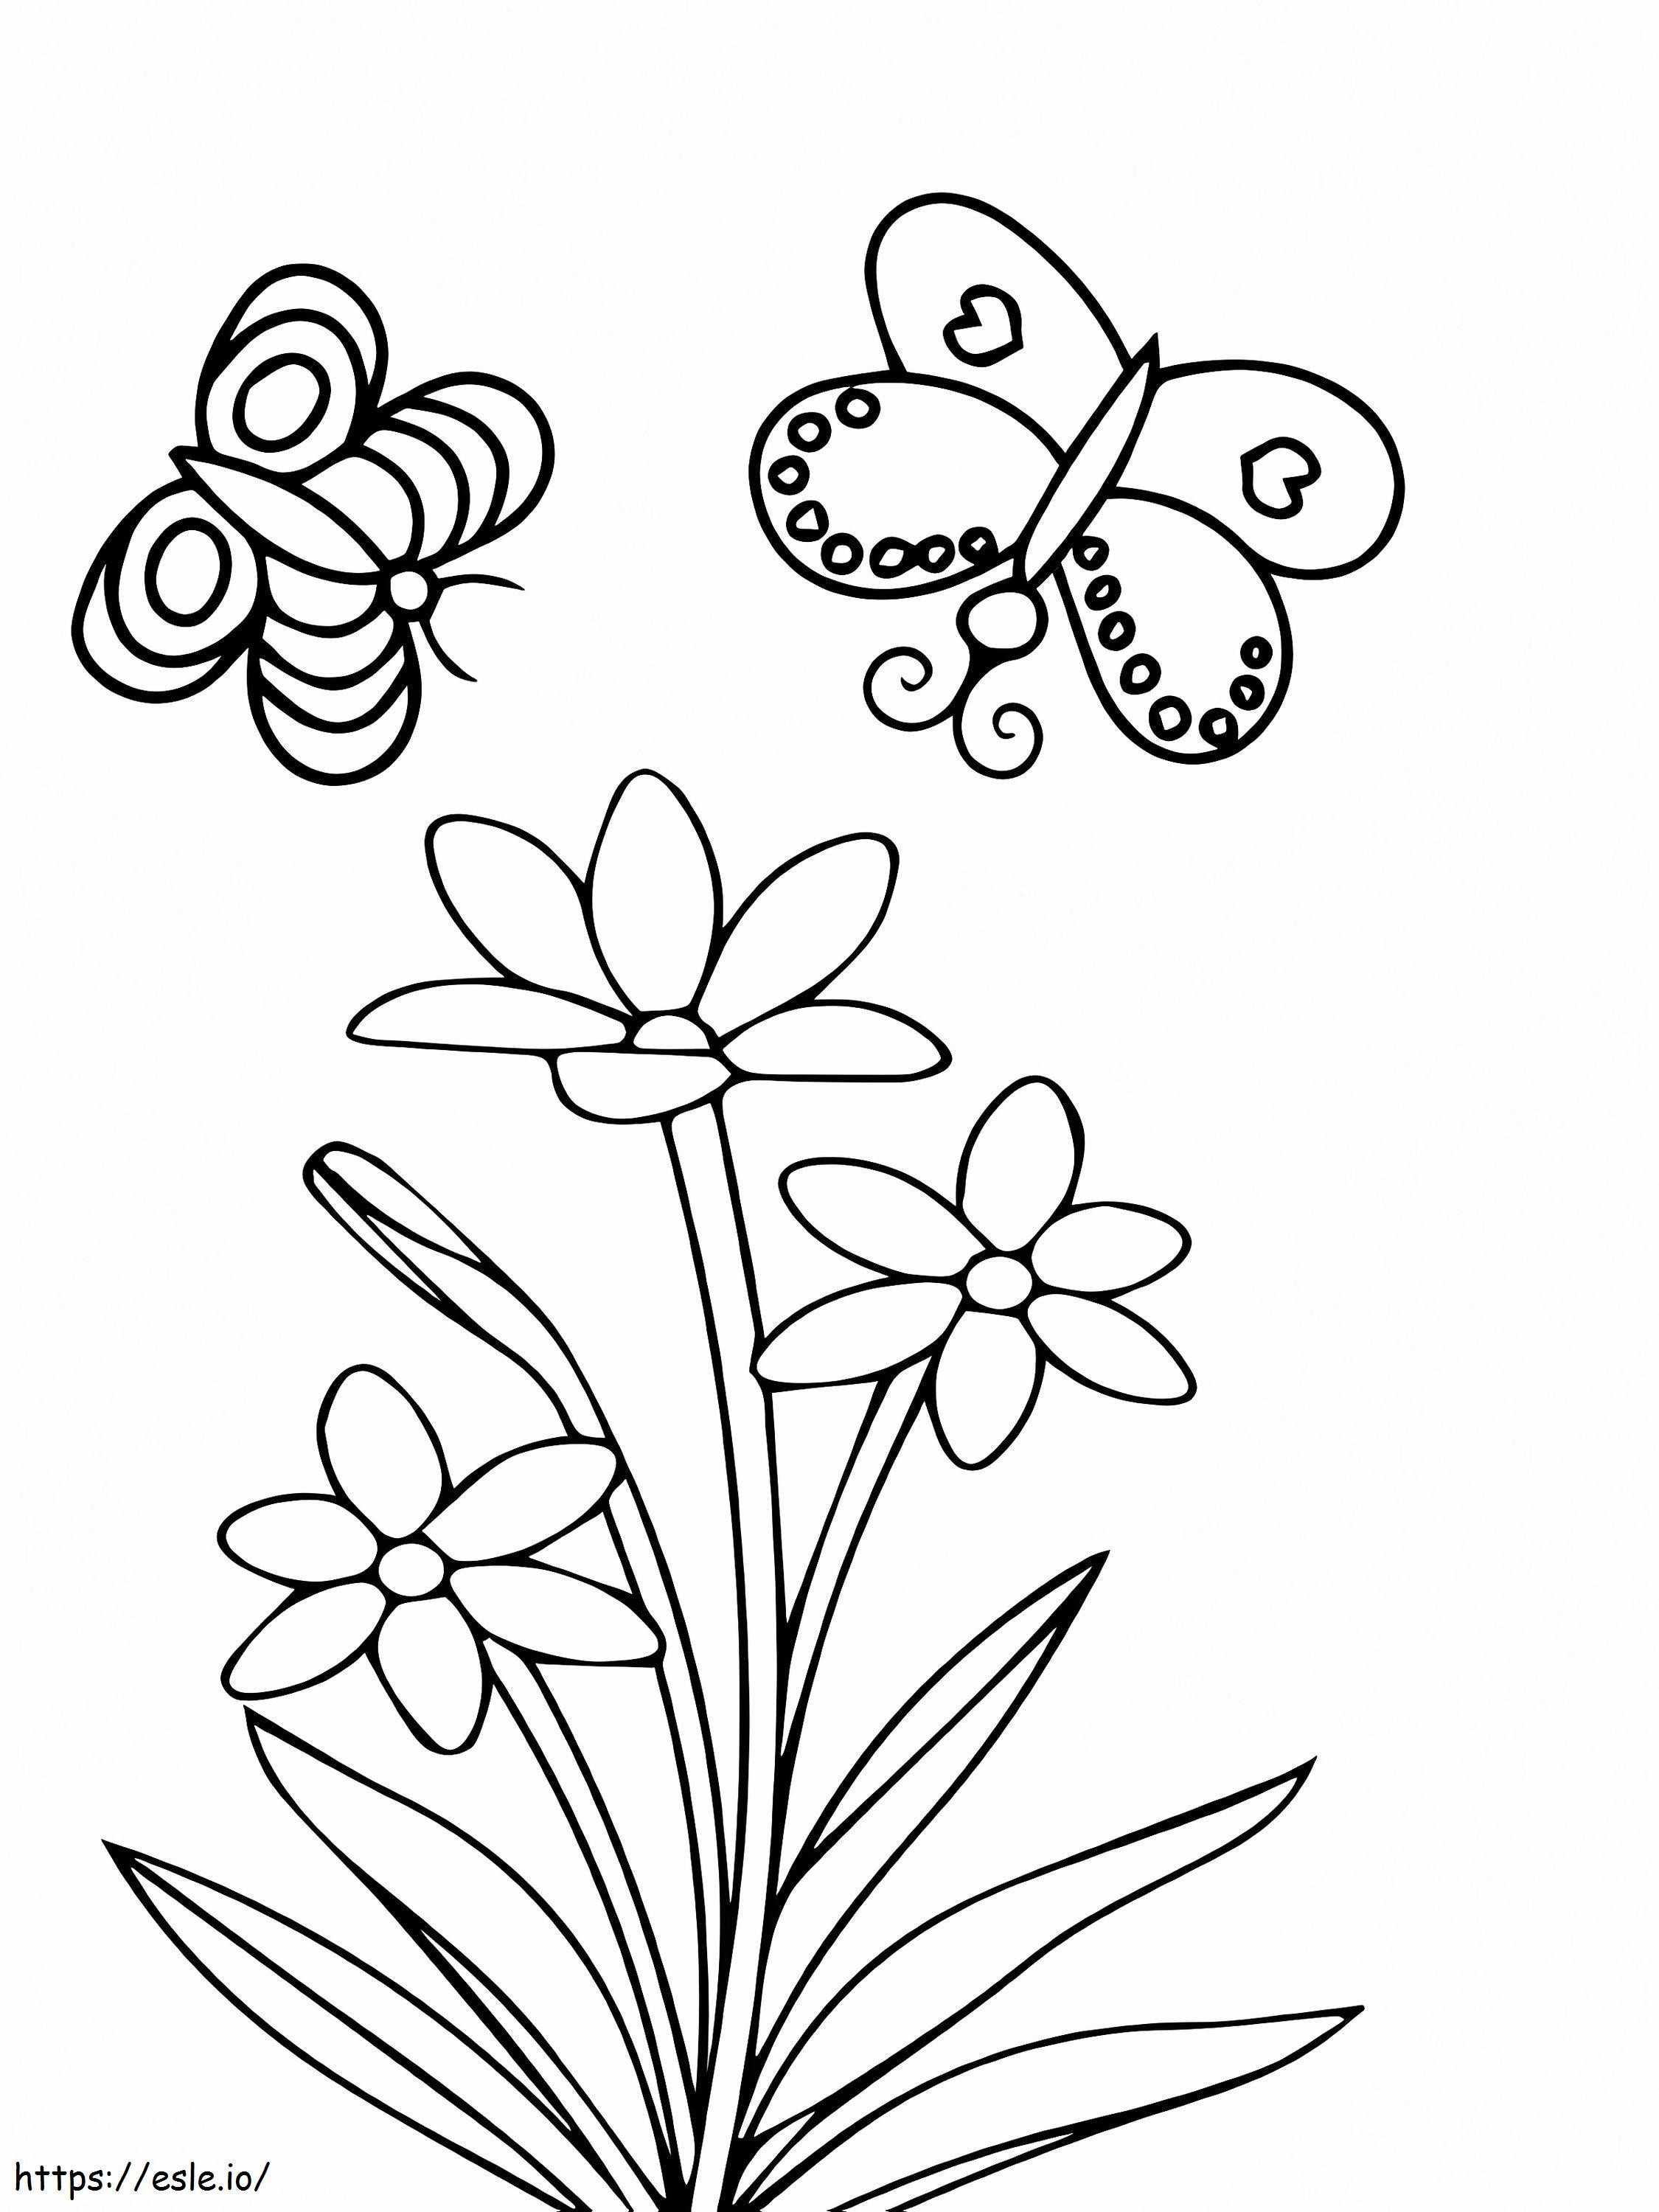 Kelebekler ve Kır Çiçekleri boyama